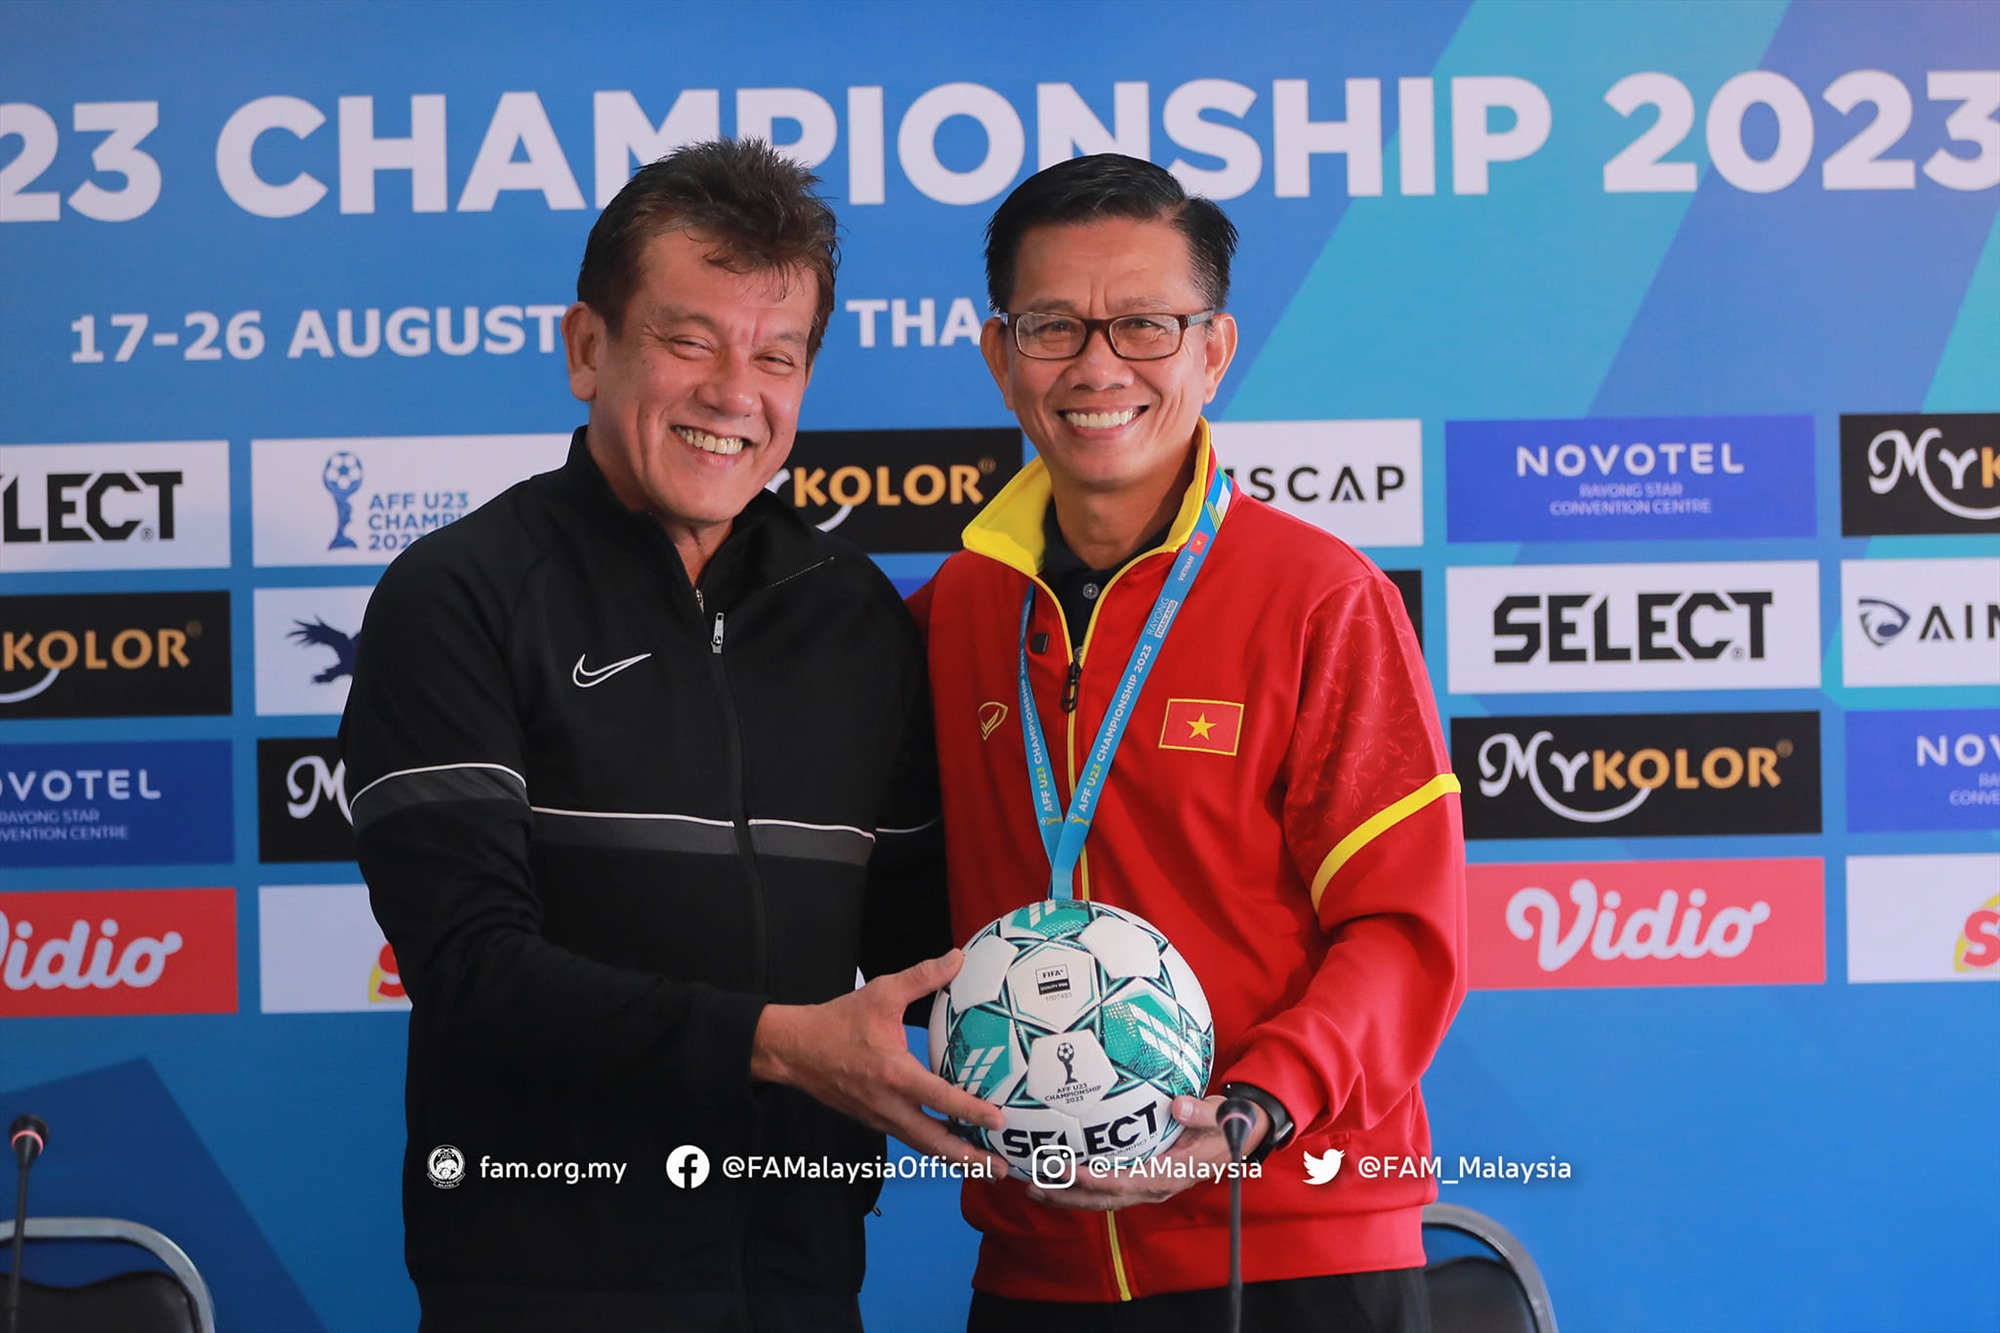 Huấn luyện viên trưởng U23 Malaysia vui vẻ chụp ảnh cùng huấn luyện viên Hoàng Anh Tuấn. Ảnh: FAM